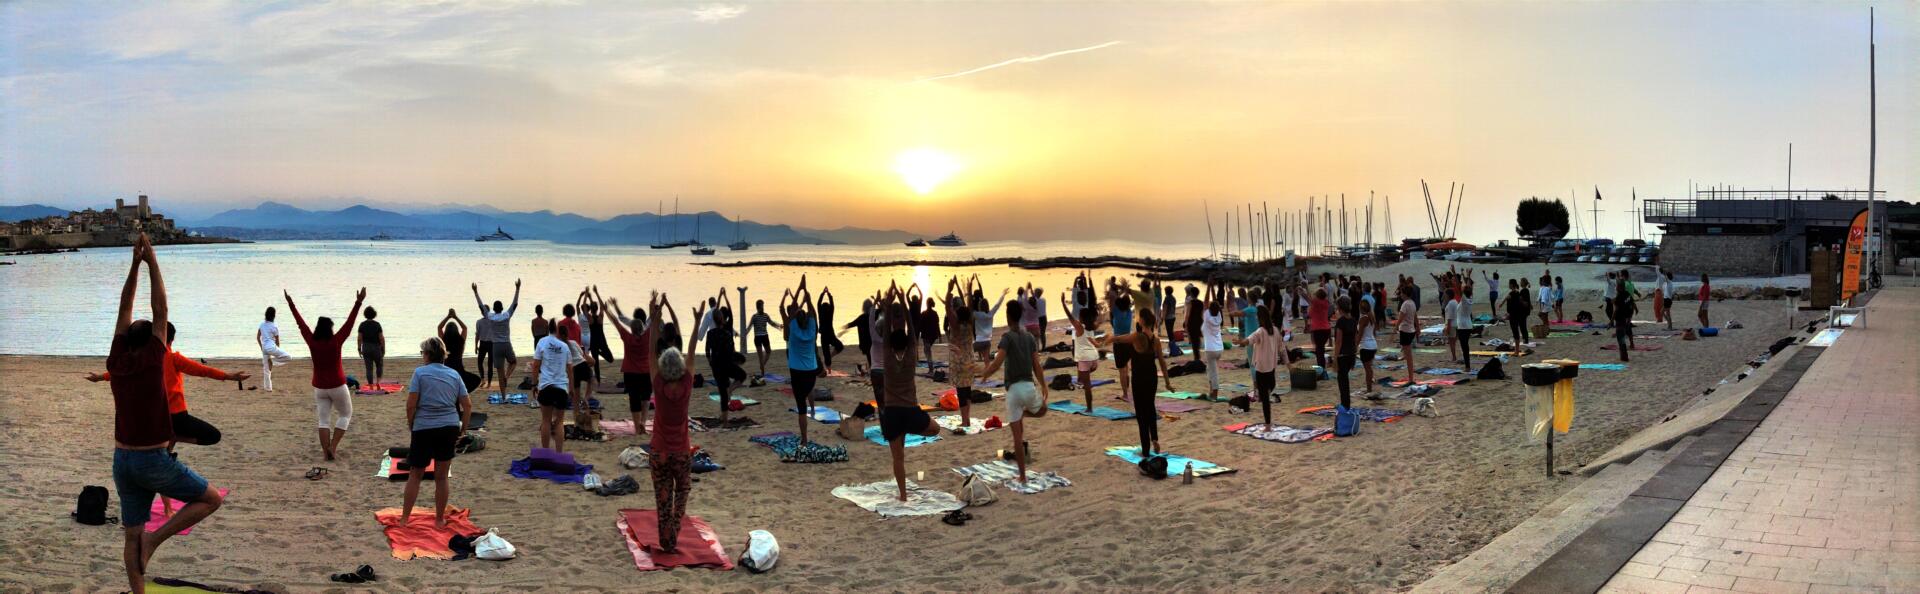 IFY - Annonce Journée internationale du Yoga